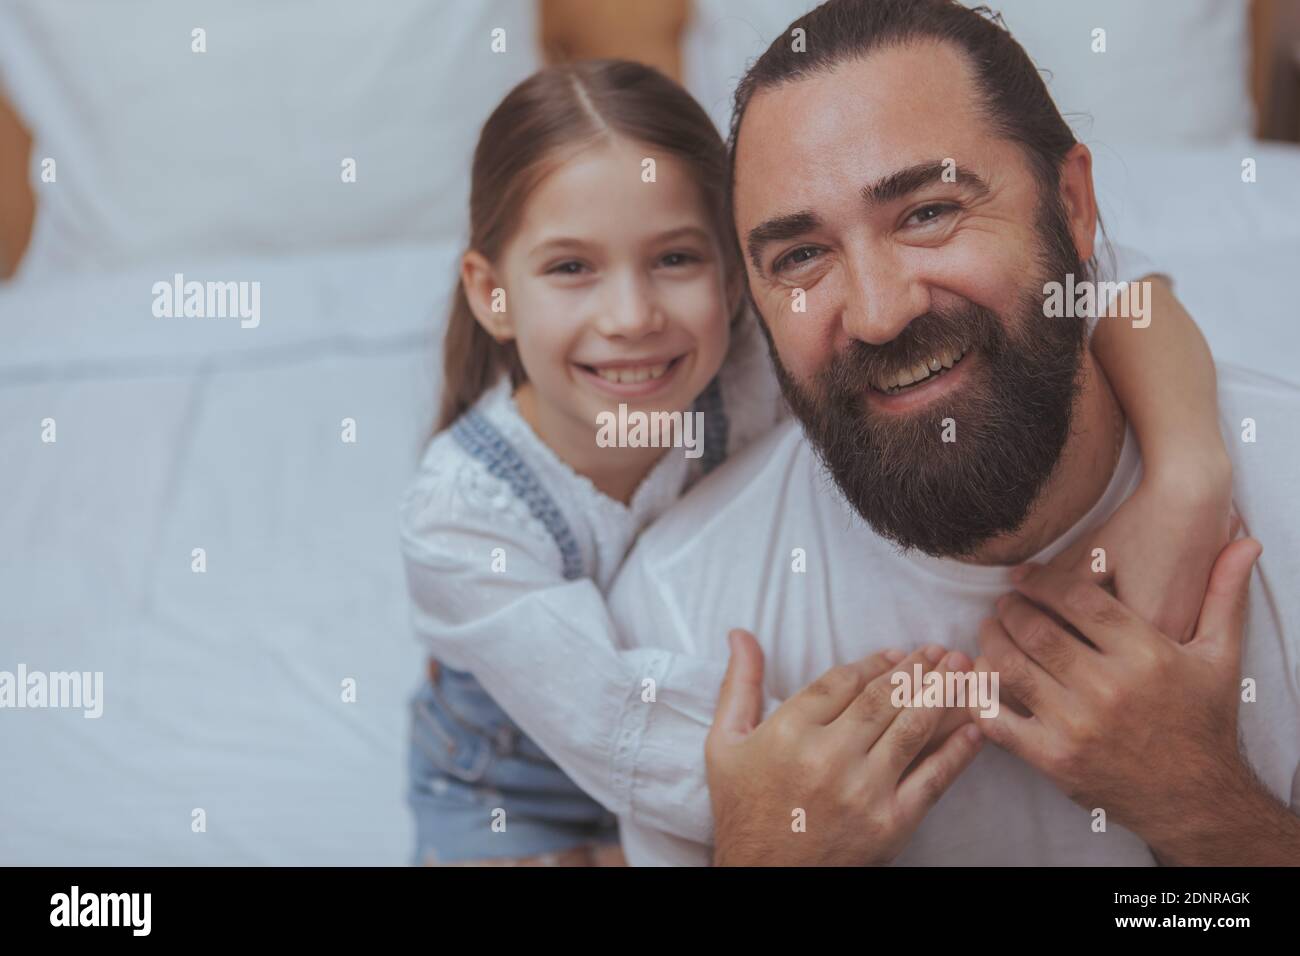 Nahaufnahme eines glücklichen alleinerziehenden Vaters und seiner niedlichen kleinen Tochter, die zur Kamera lächelt. Schönes kleines Mädchen umarmt ihren Vater, lächelnd freudig, kopieren Spa Stockfoto